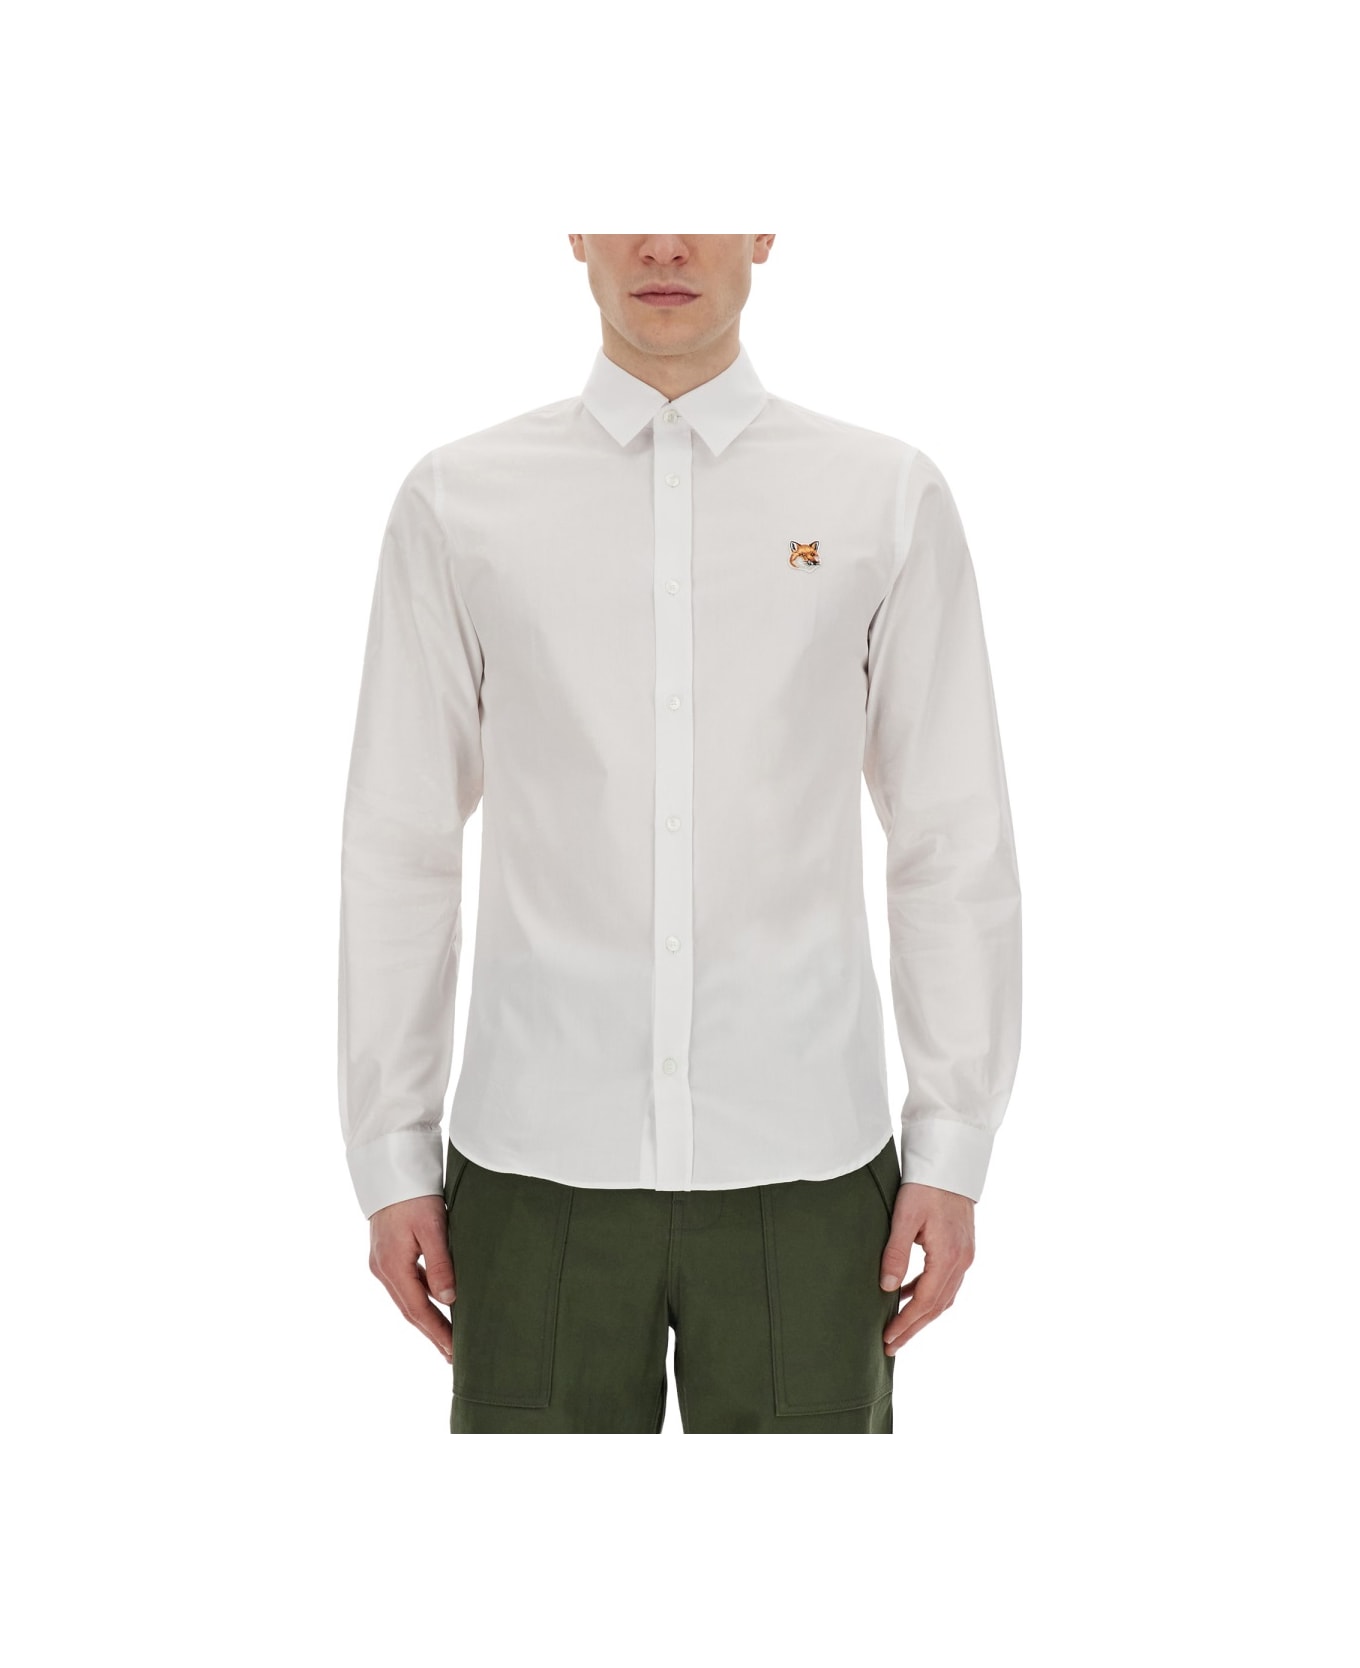 Maison Kitsuné Fox Patch Shirt - WHITE シャツ